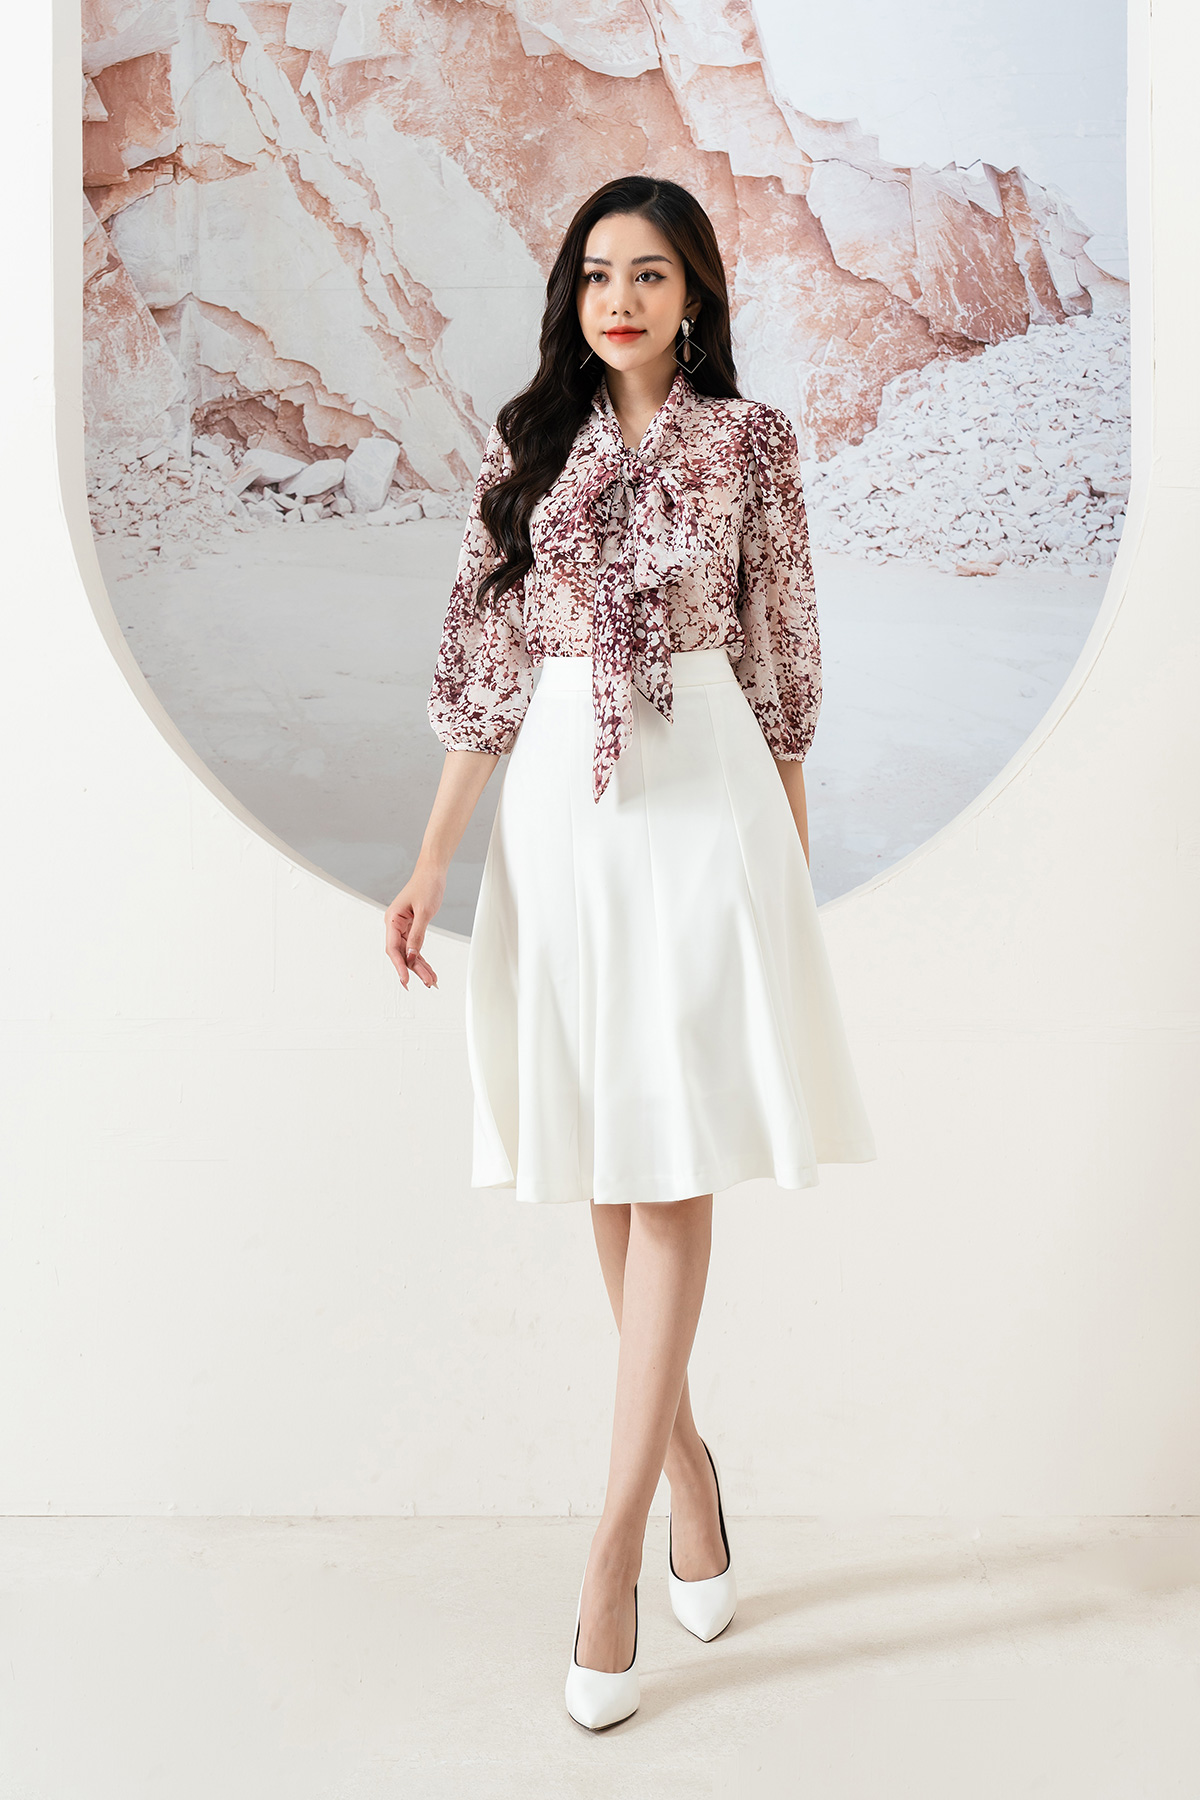 Thời trang công sở Lamer Fashion & 4 kiểu phối đồ kinh điển làm hài lòng mọi phụ nữ Việt - Ảnh 4.